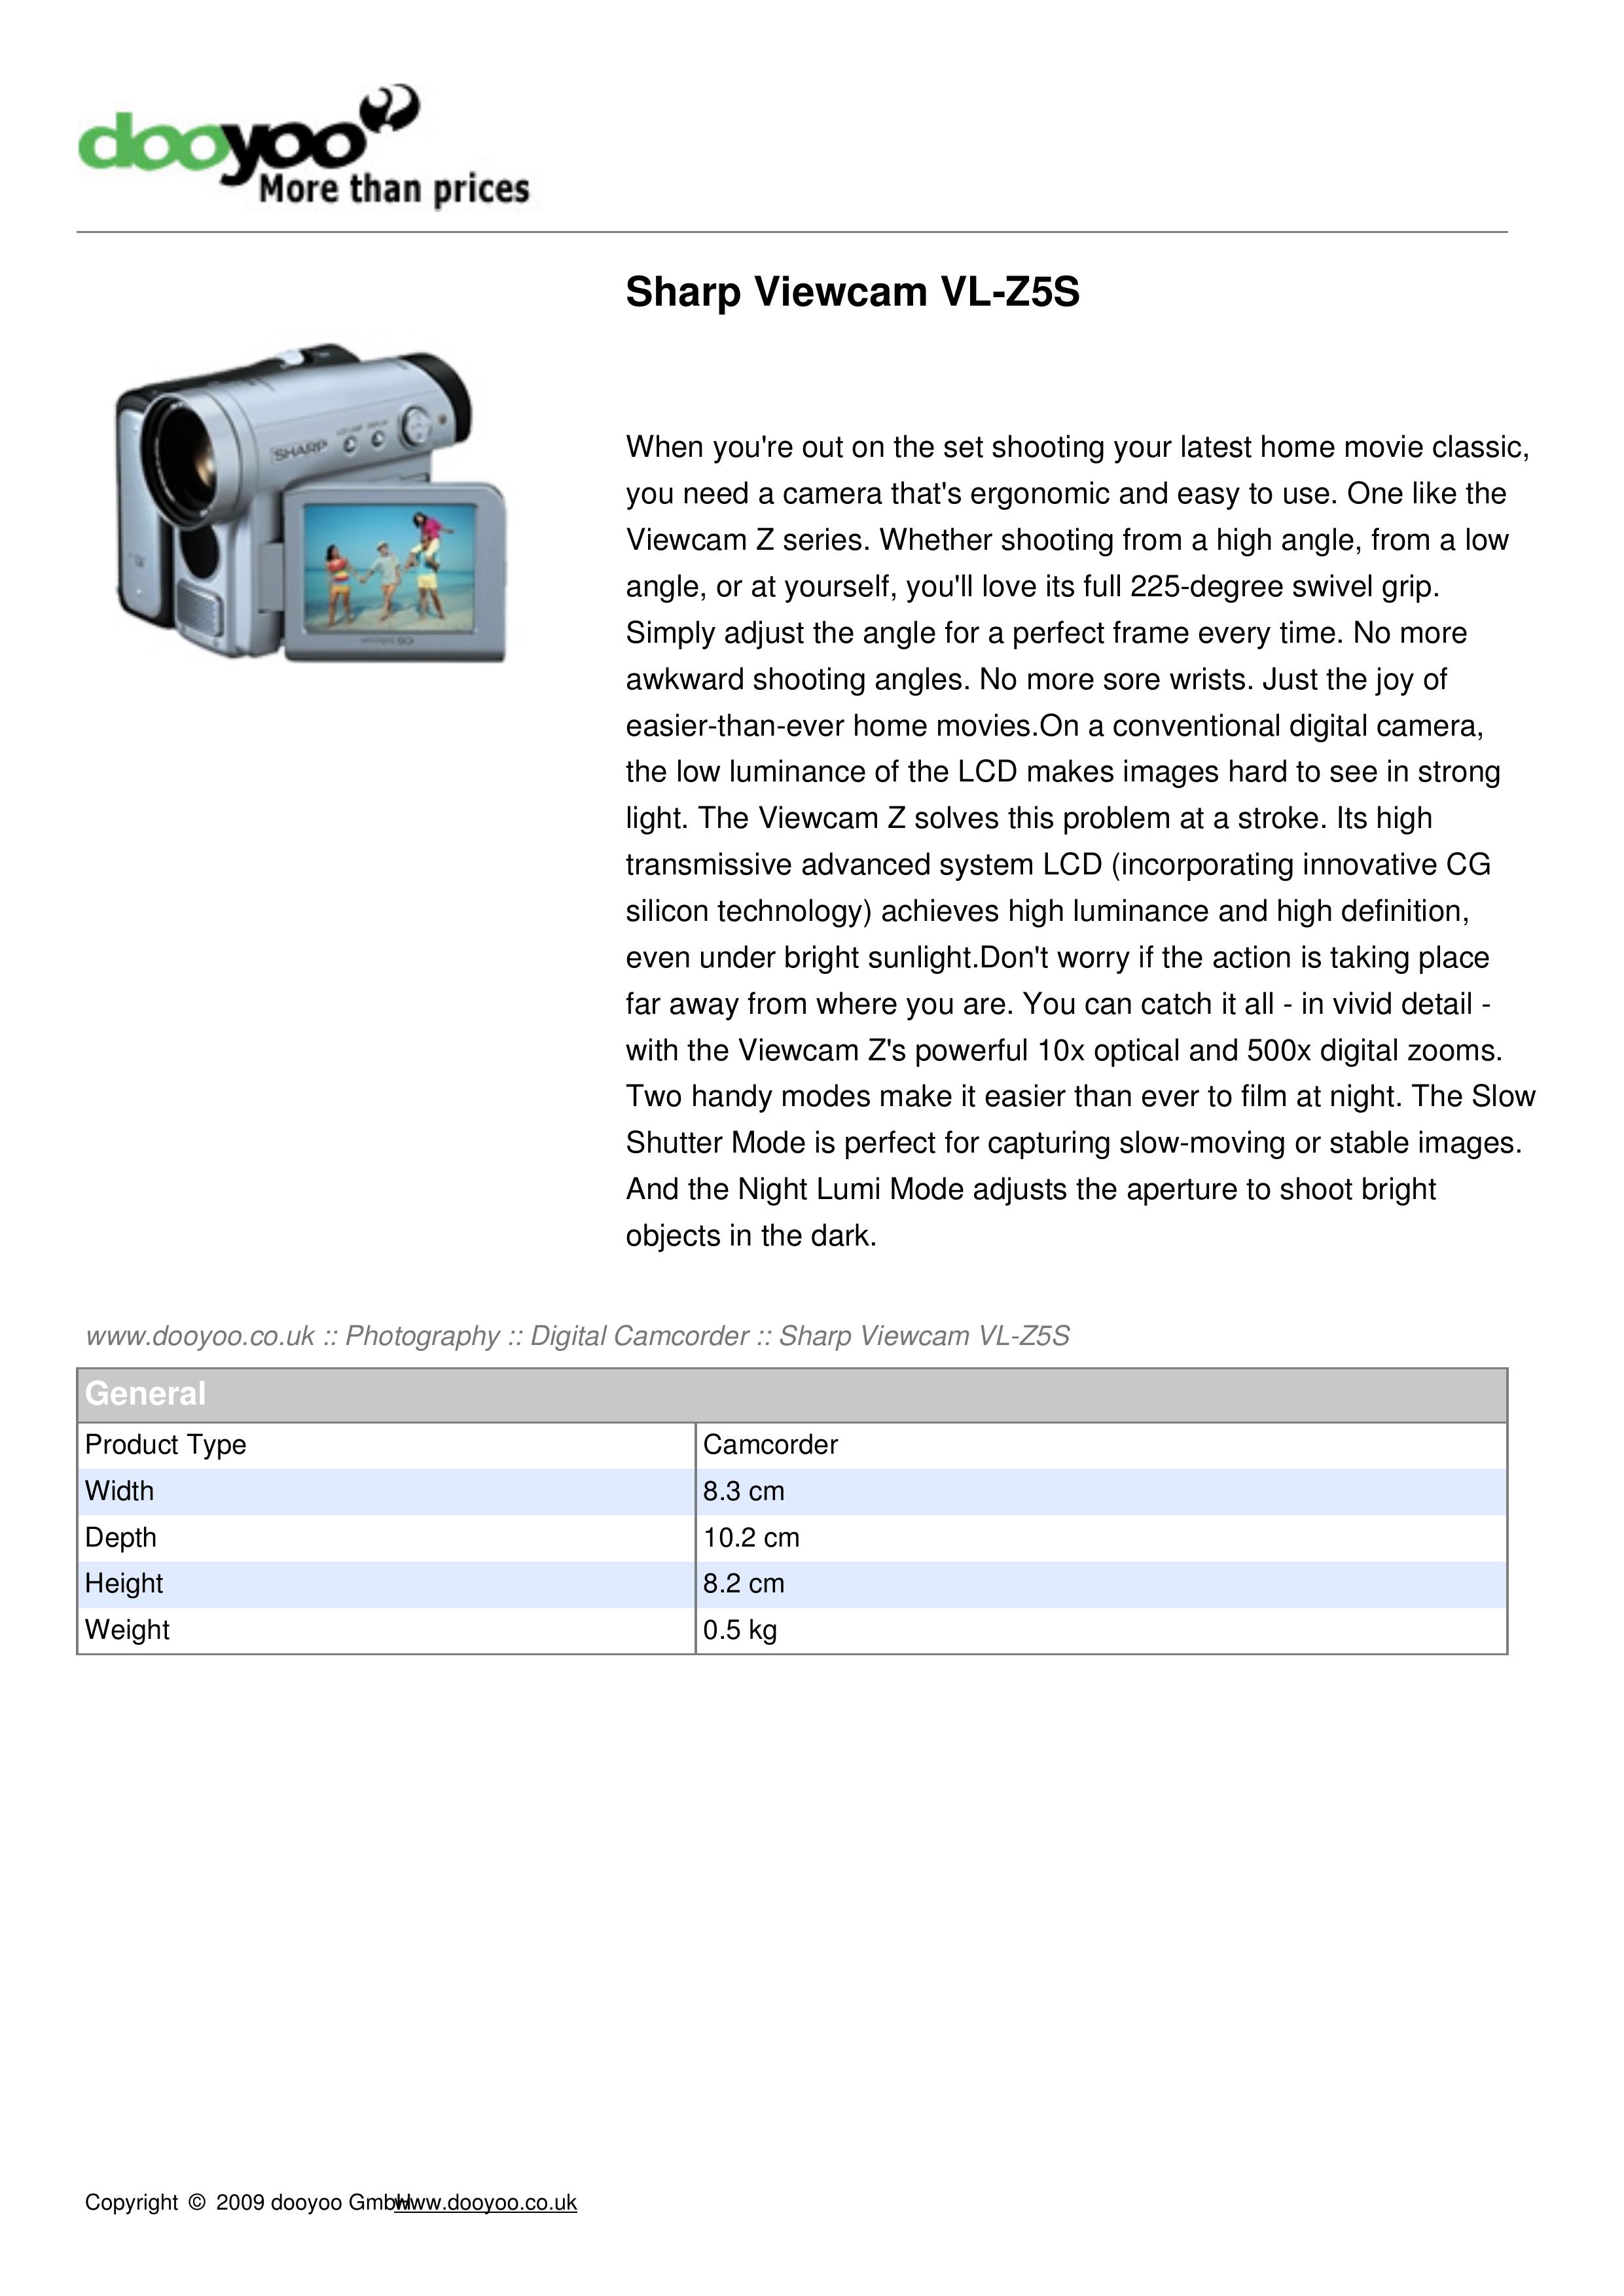 Sharp VL-Z5S Camcorder User Manual